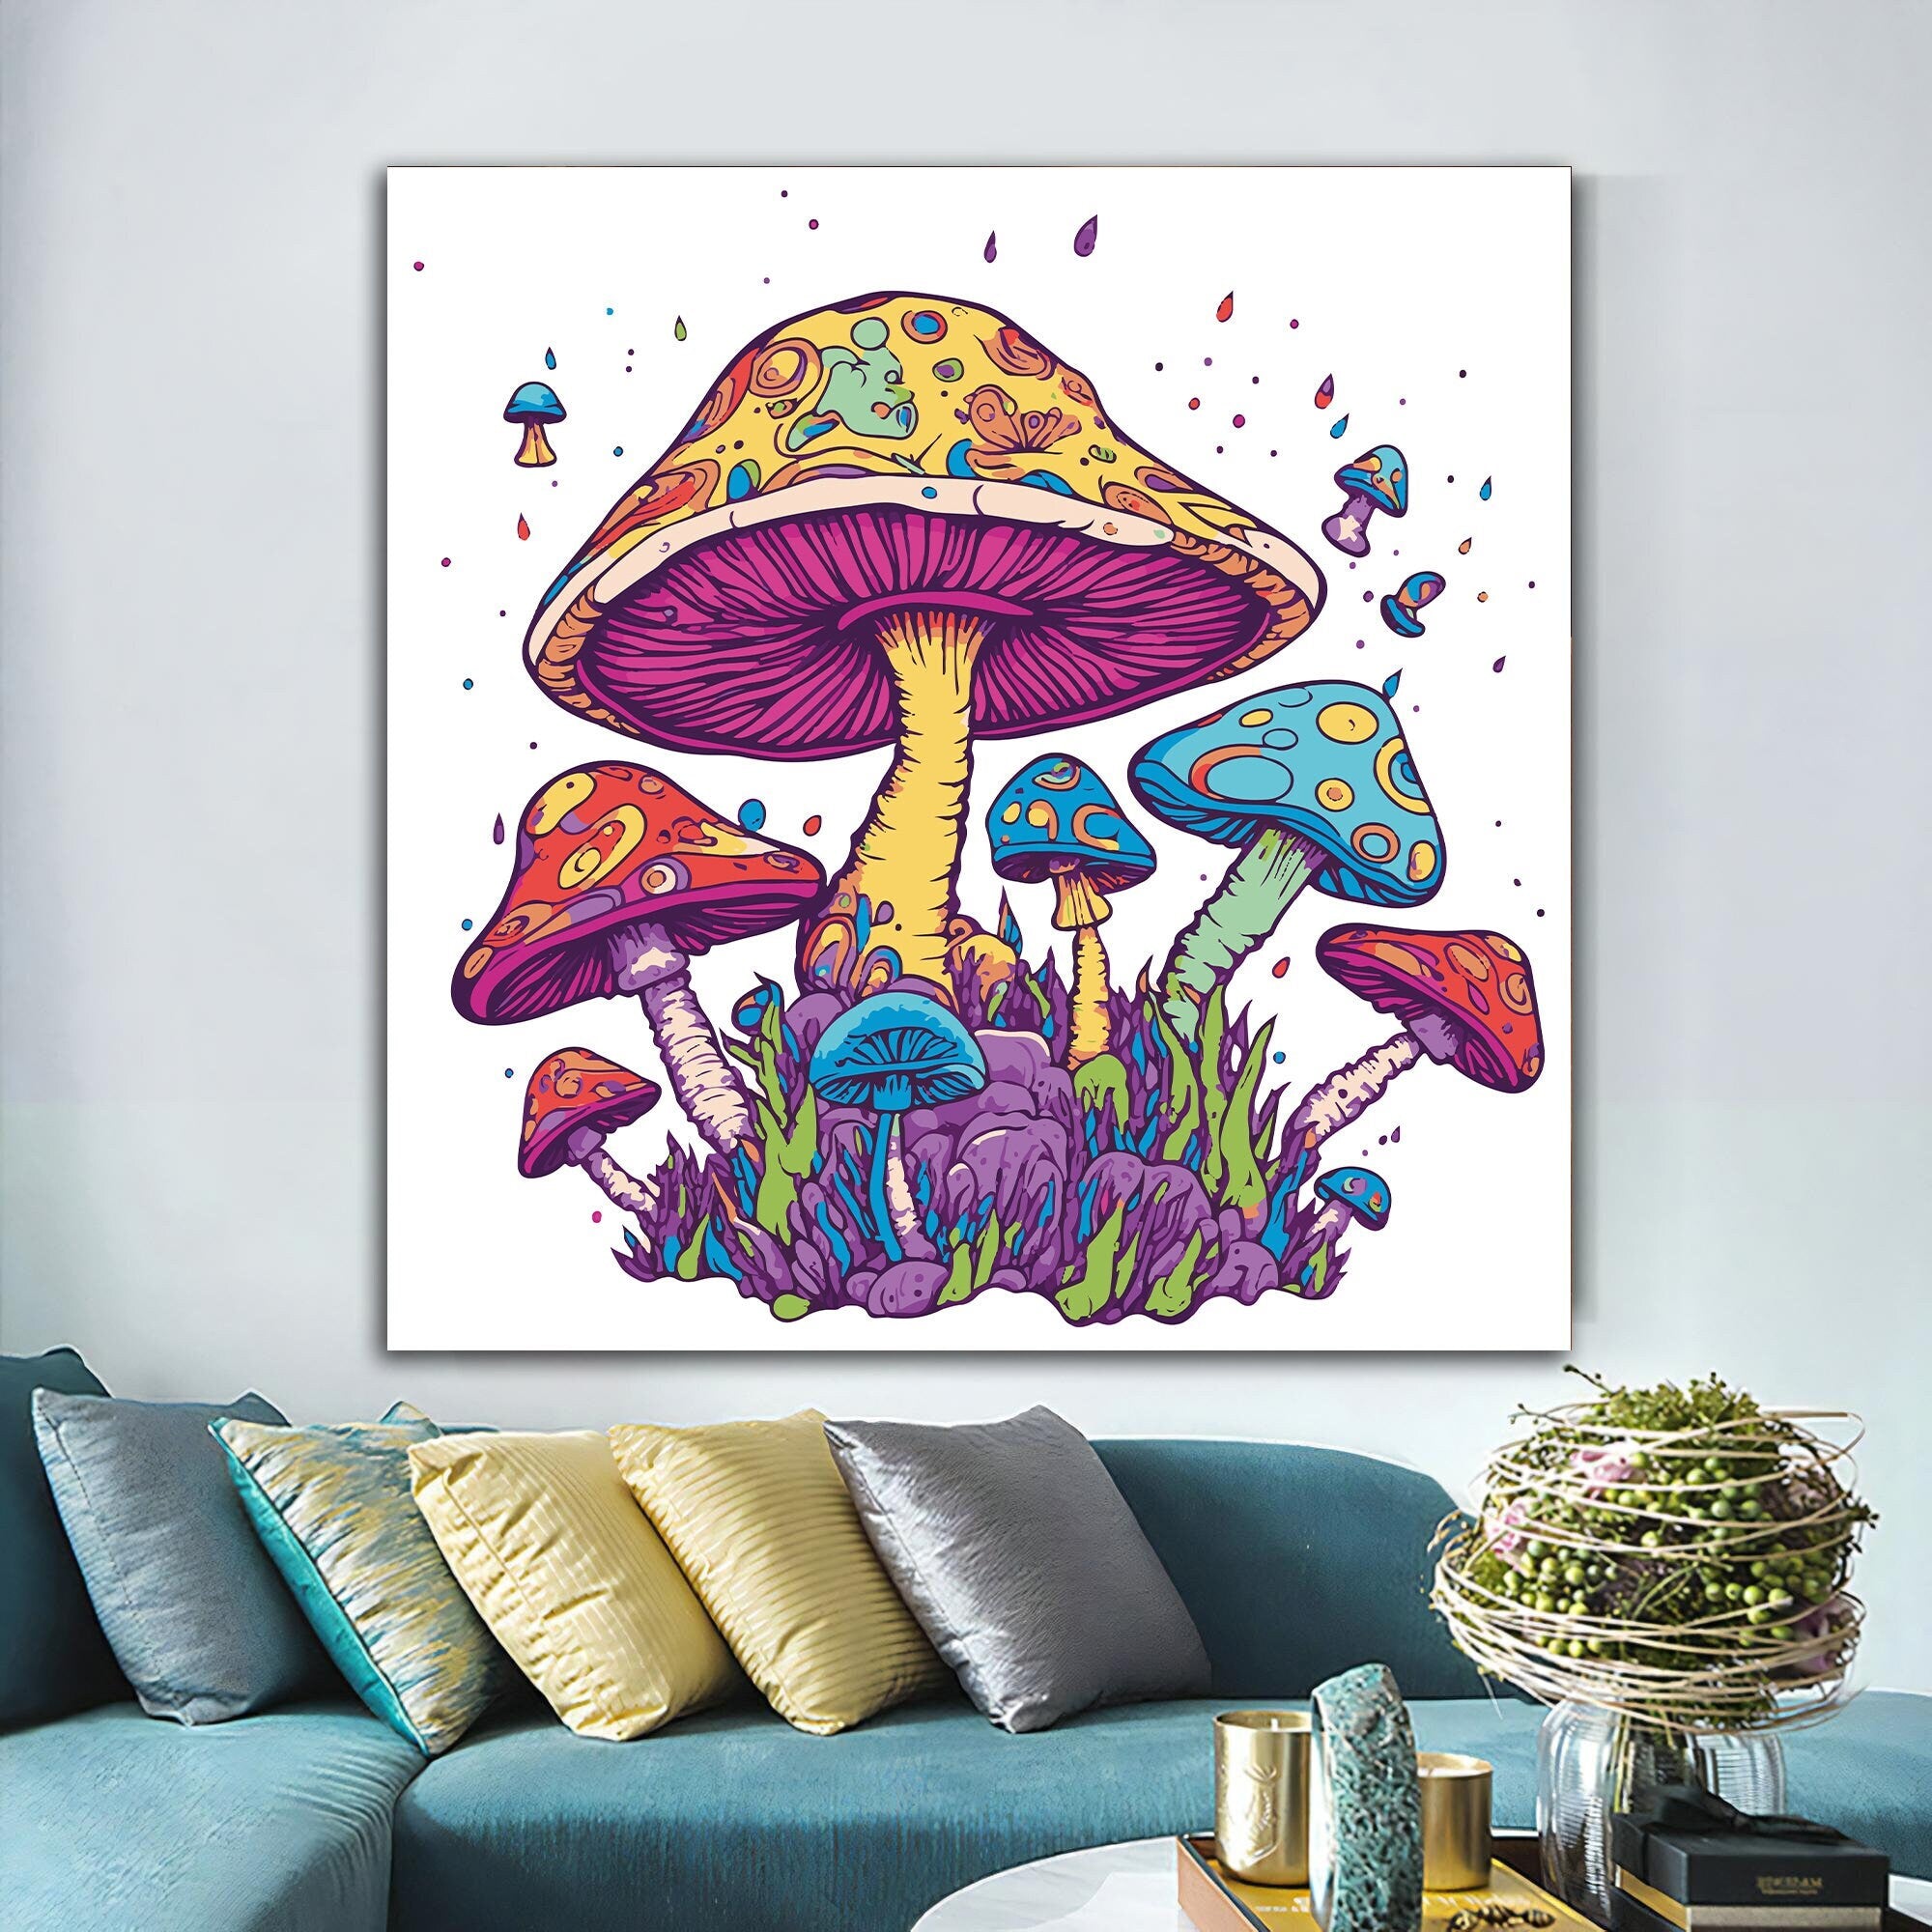 Mushroom canvas, colorful mushrooms painting, cartoon mushrooms wall art, poster for kids room